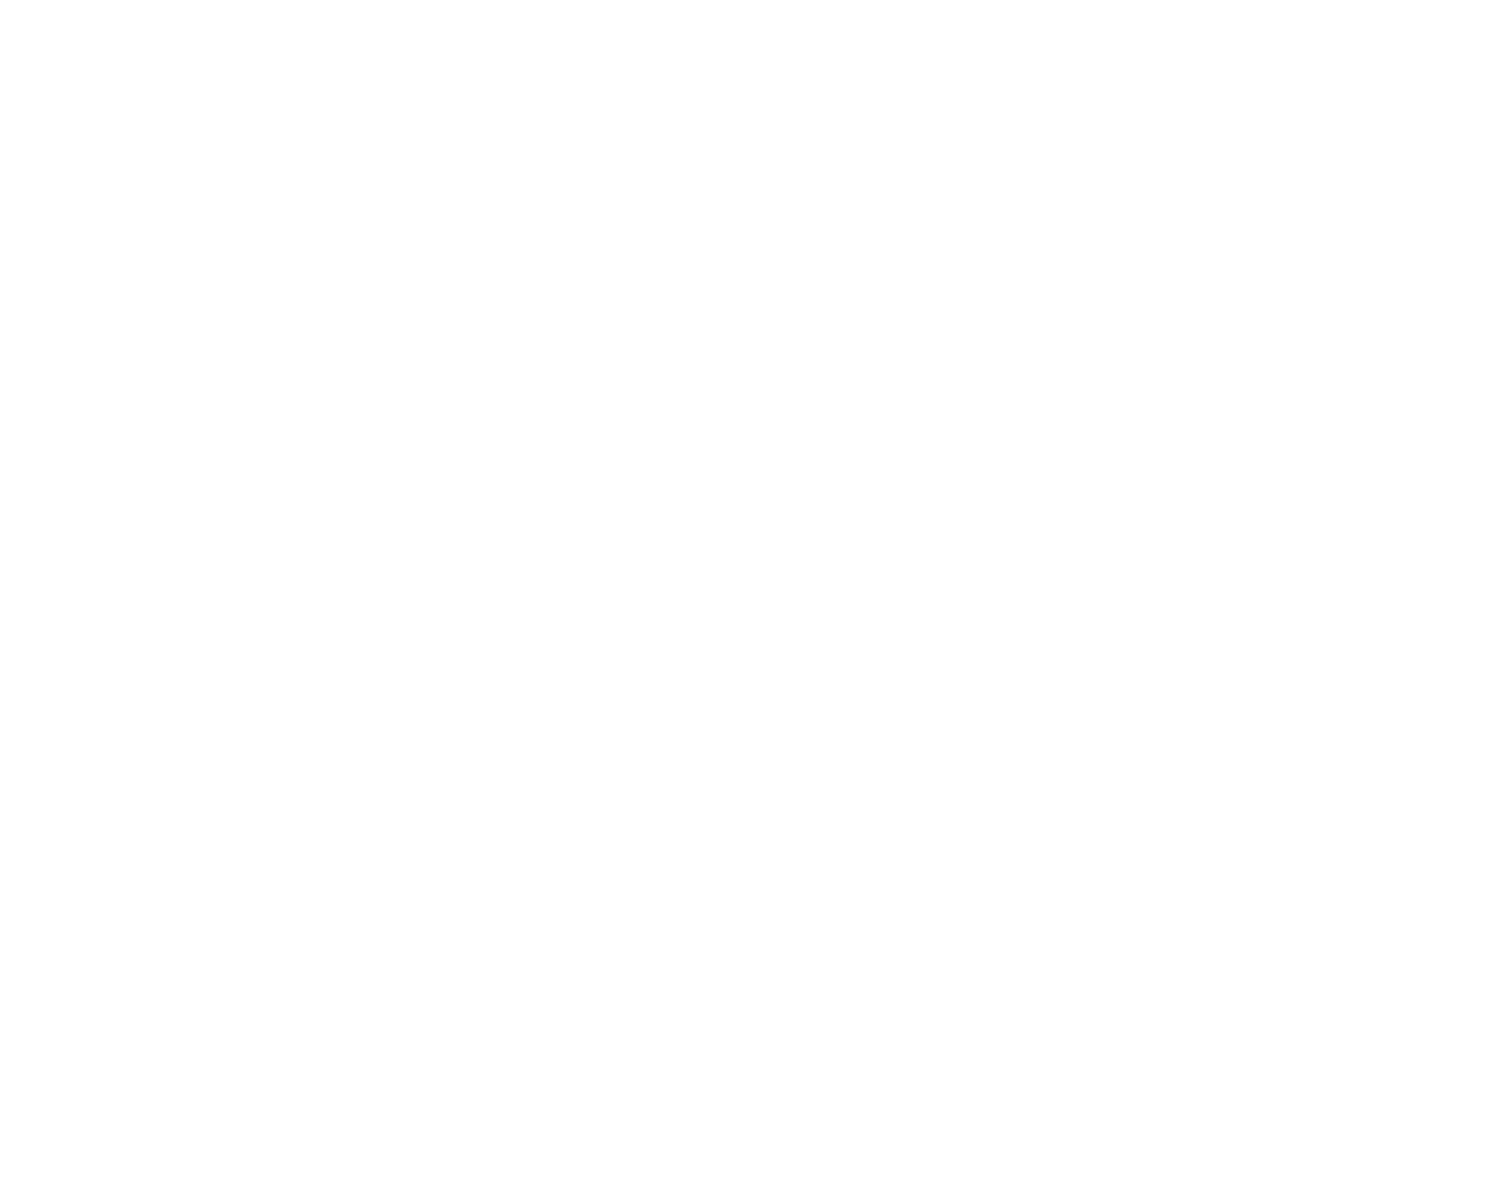 Fine Organics logo for dark backgrounds (transparent PNG)